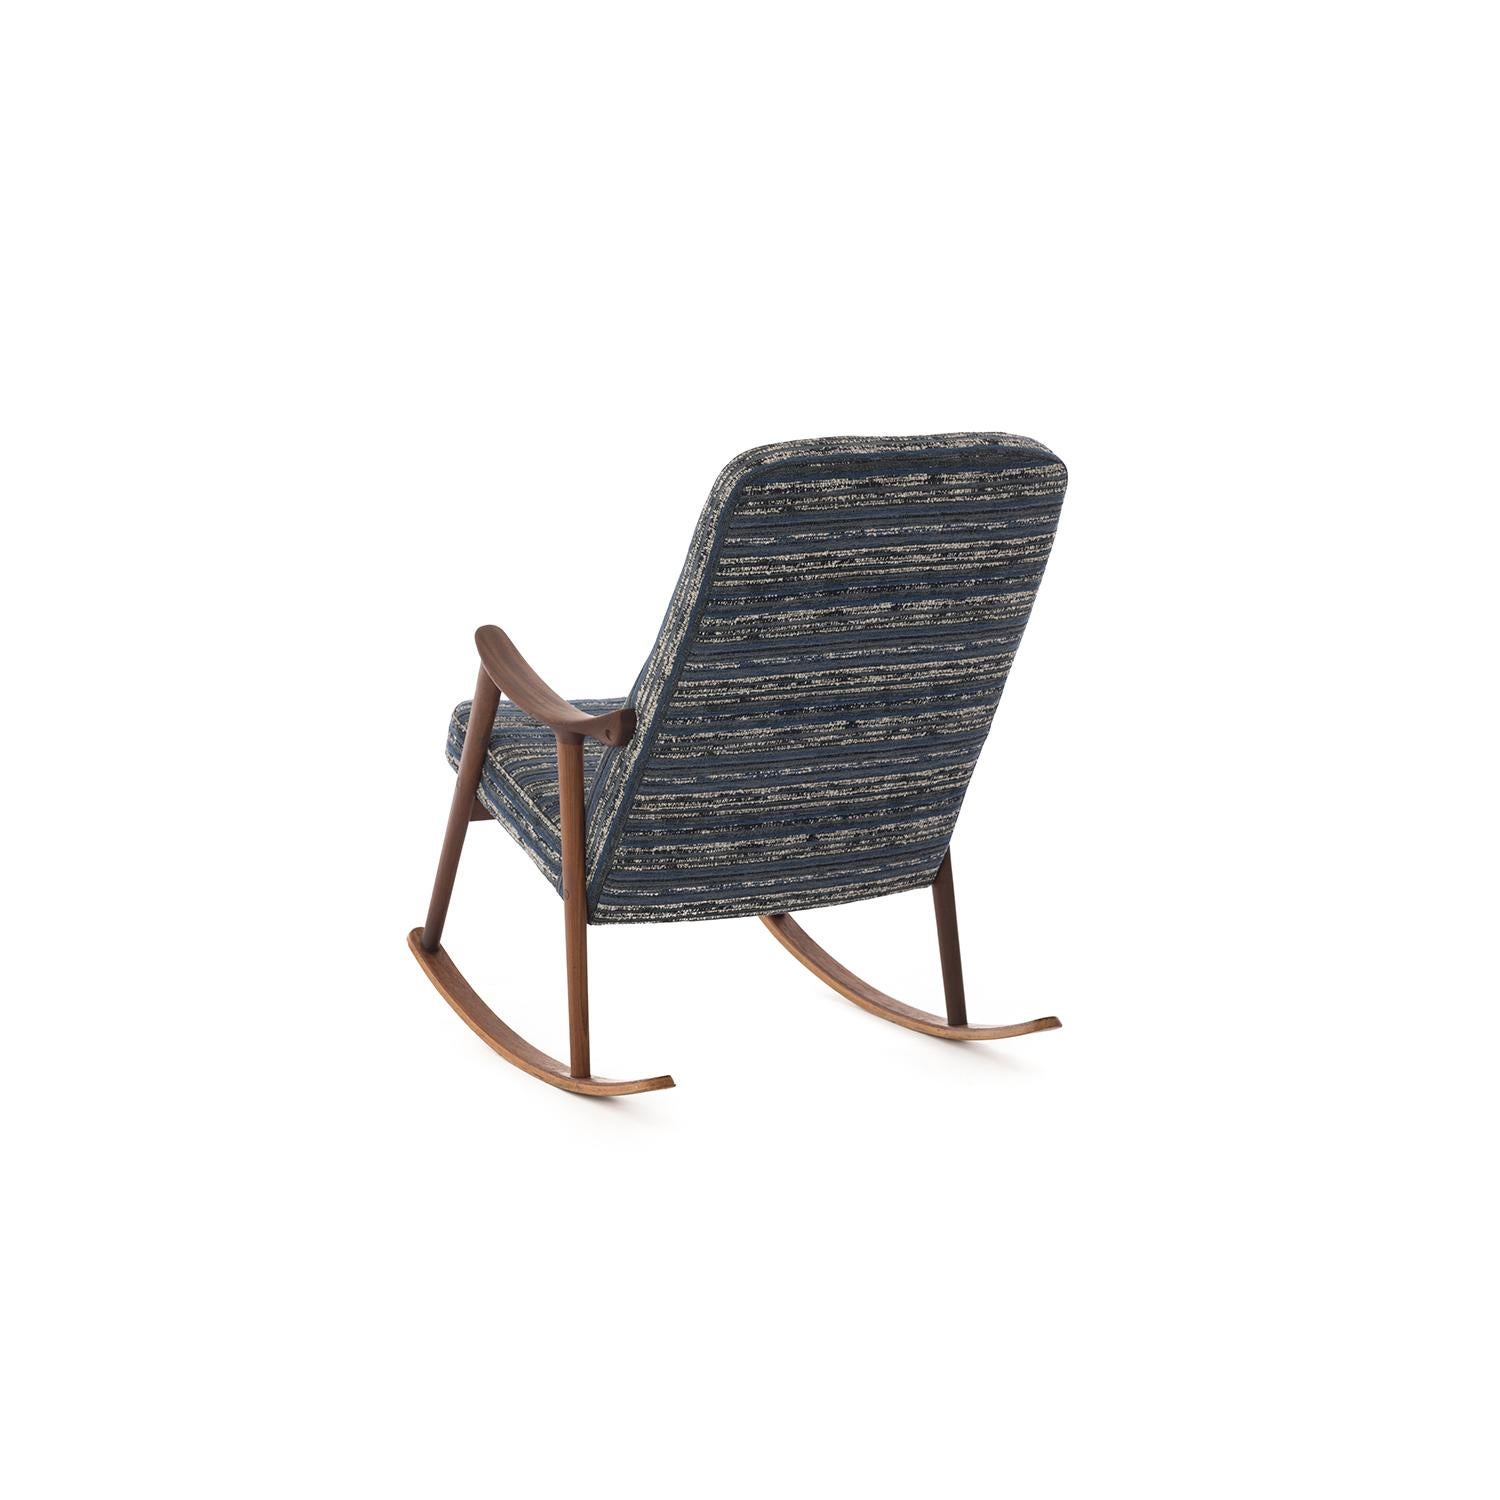 Oiled Scandinavian Modern Teak Rocking Chair by Ingmar Relling